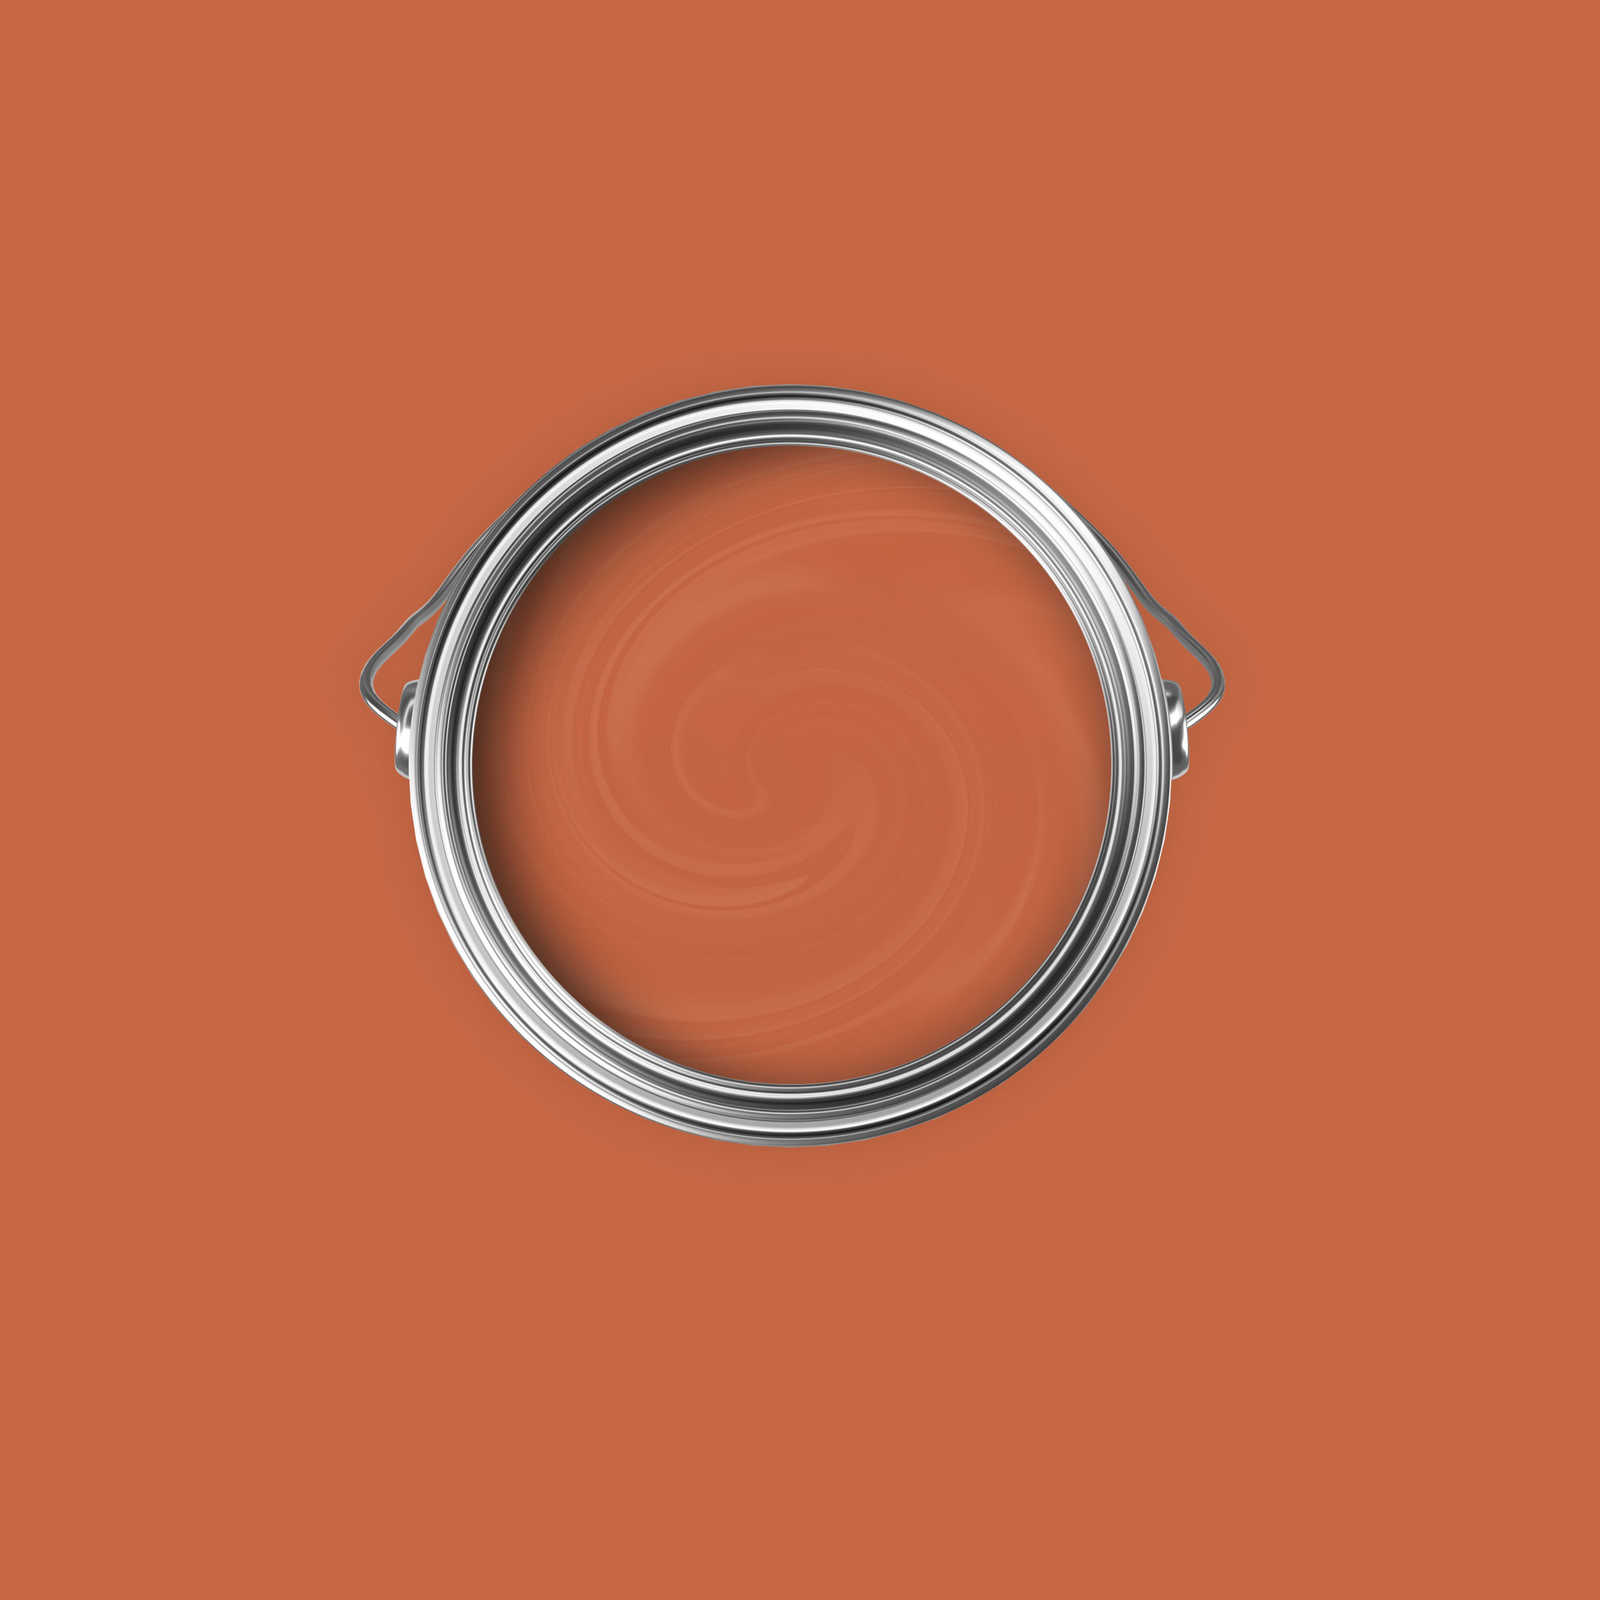             Premium Wandfarbe leidenschaftliches Blutorange »Pretty Peach« NW906 – 2,5 Liter
        